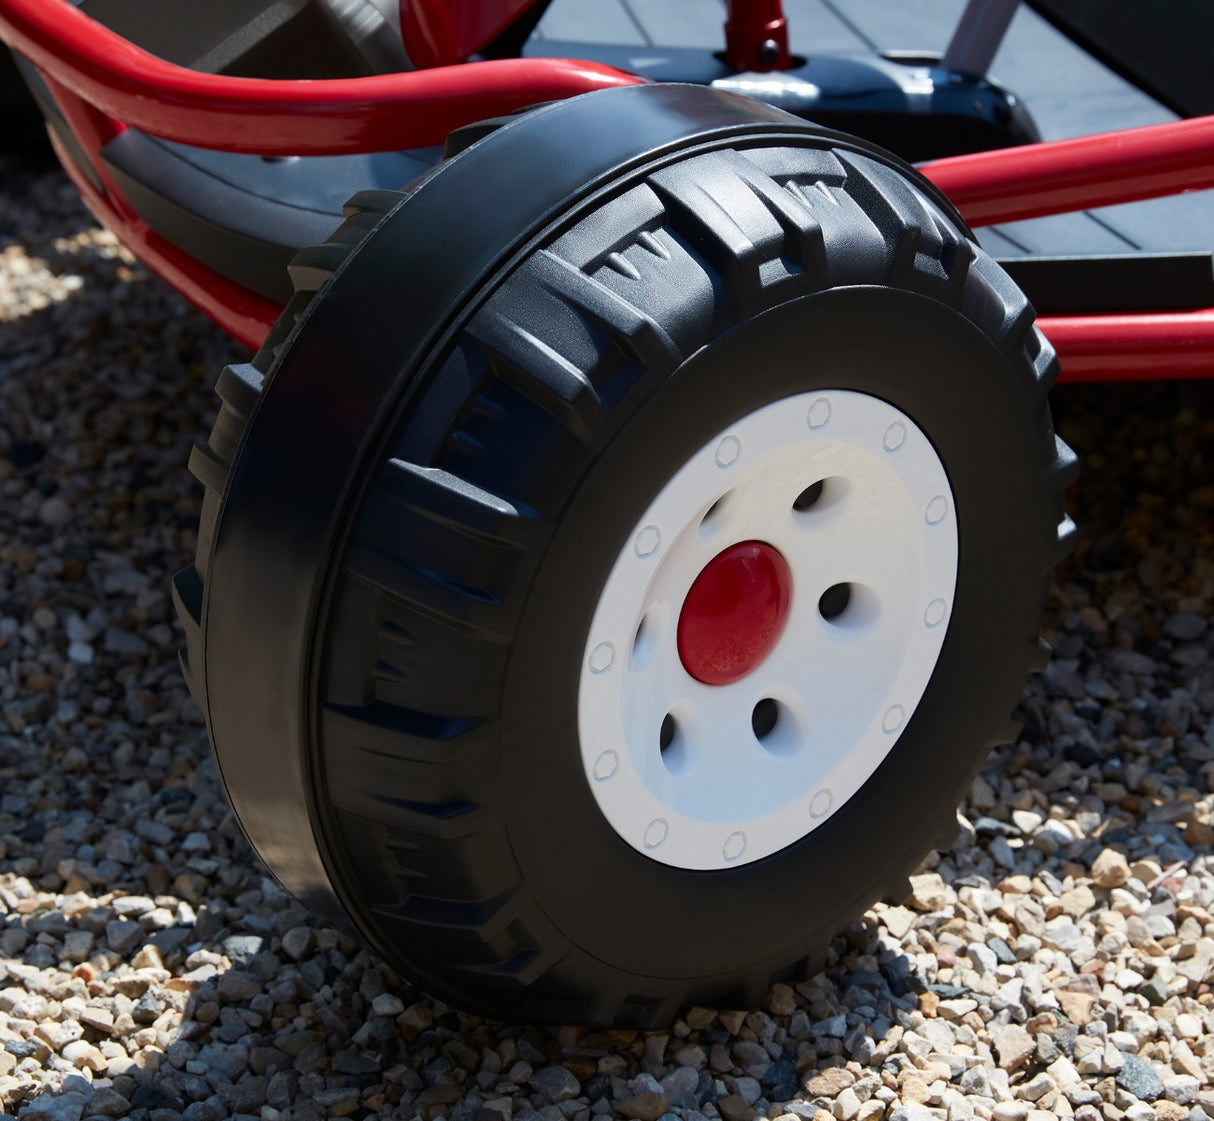 Ultimate Go-Kart for 2's Rugged Tires On Gravel